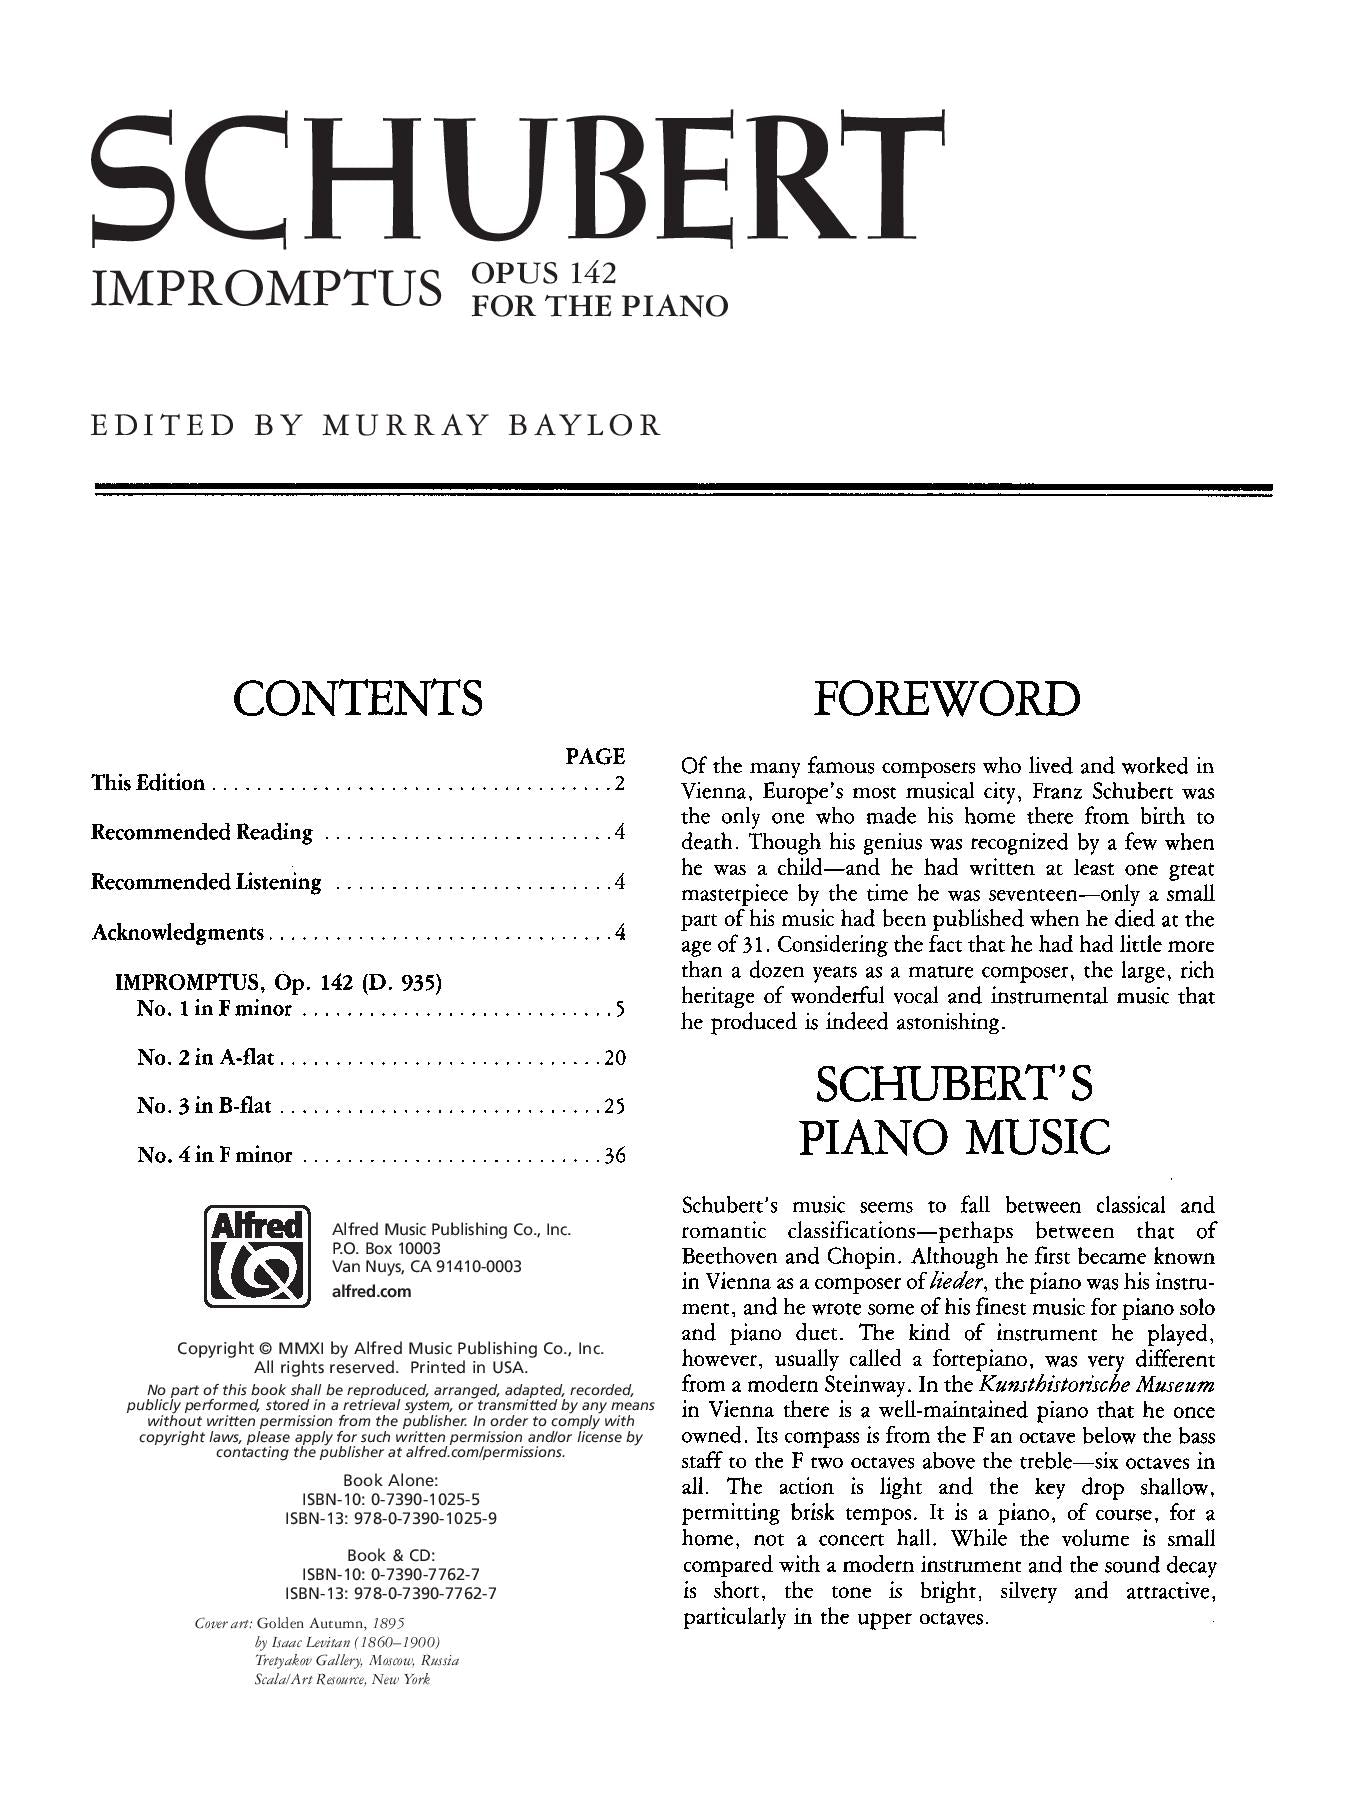 Schubert: Impromptus Op. 142 for Piano